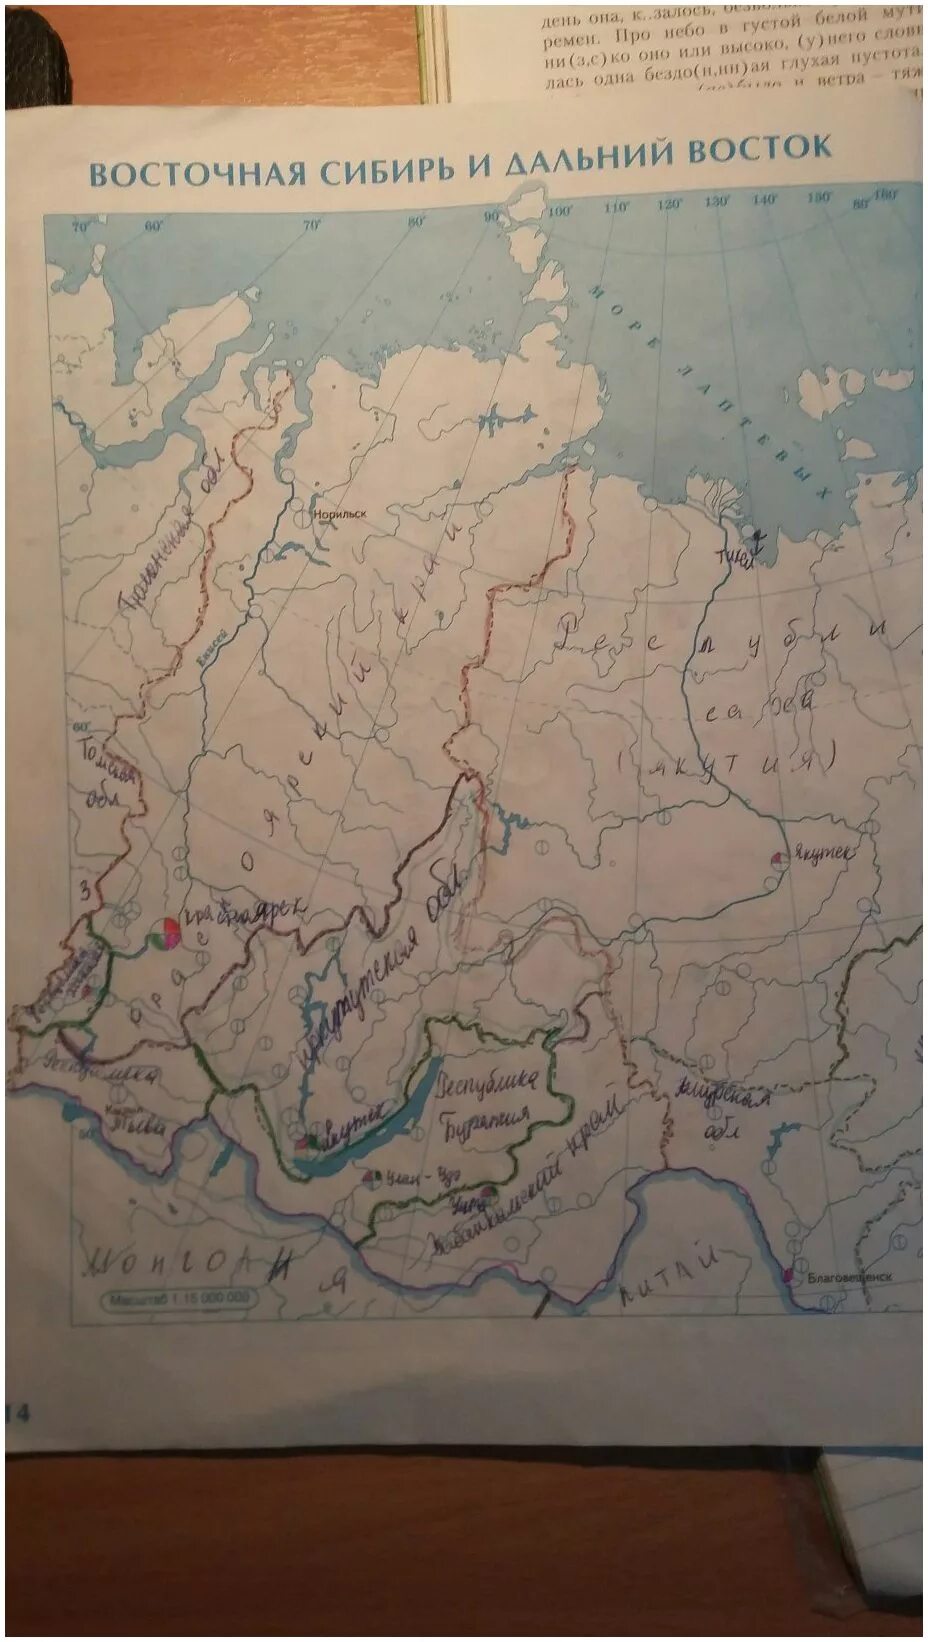 Контурная карта по географии 9 Сибирь. Восточная Сибирь контурная карта 9 класс. Восточная Сибирь контурная карта 9 класс гдз. Восточная Сибирь и Дальний Восток контурная карта 9 класс гдз. Восточная и дальняя сибирь контурная карта